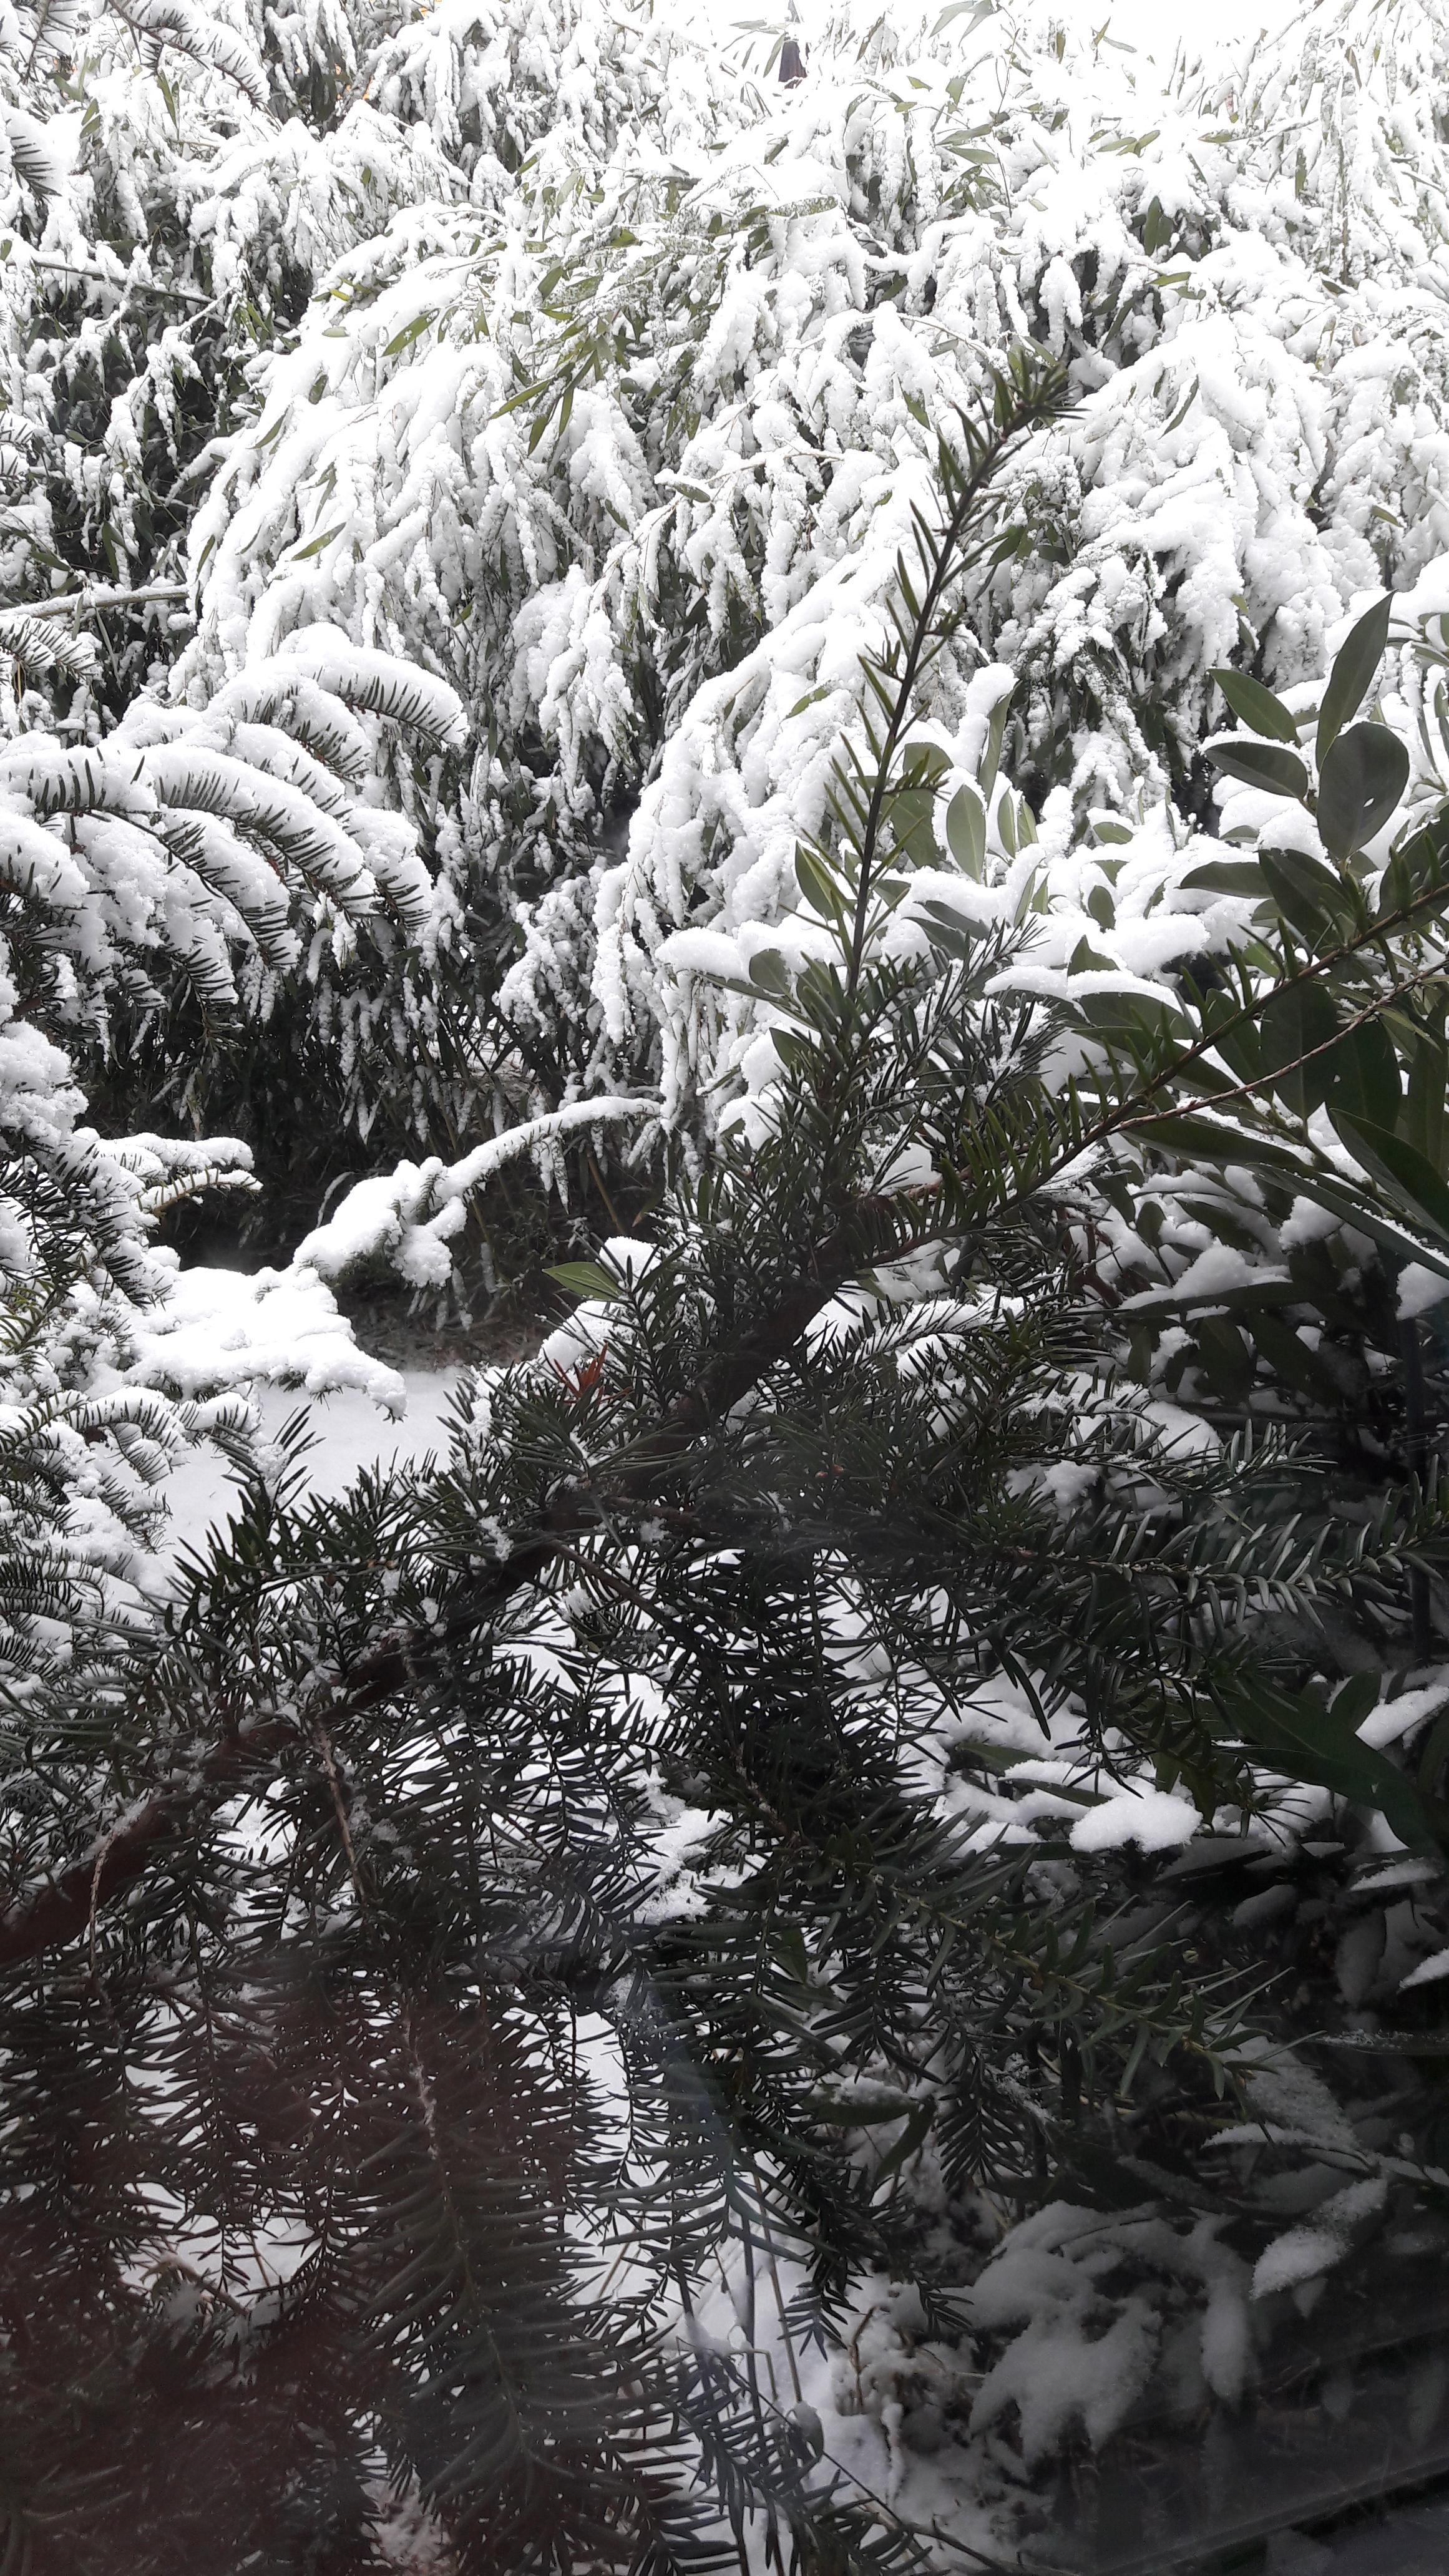 Bald sieht es genau so aus, wenn ich aus dem Fenster schaue ... 😍❄#schnee #winter #bambus